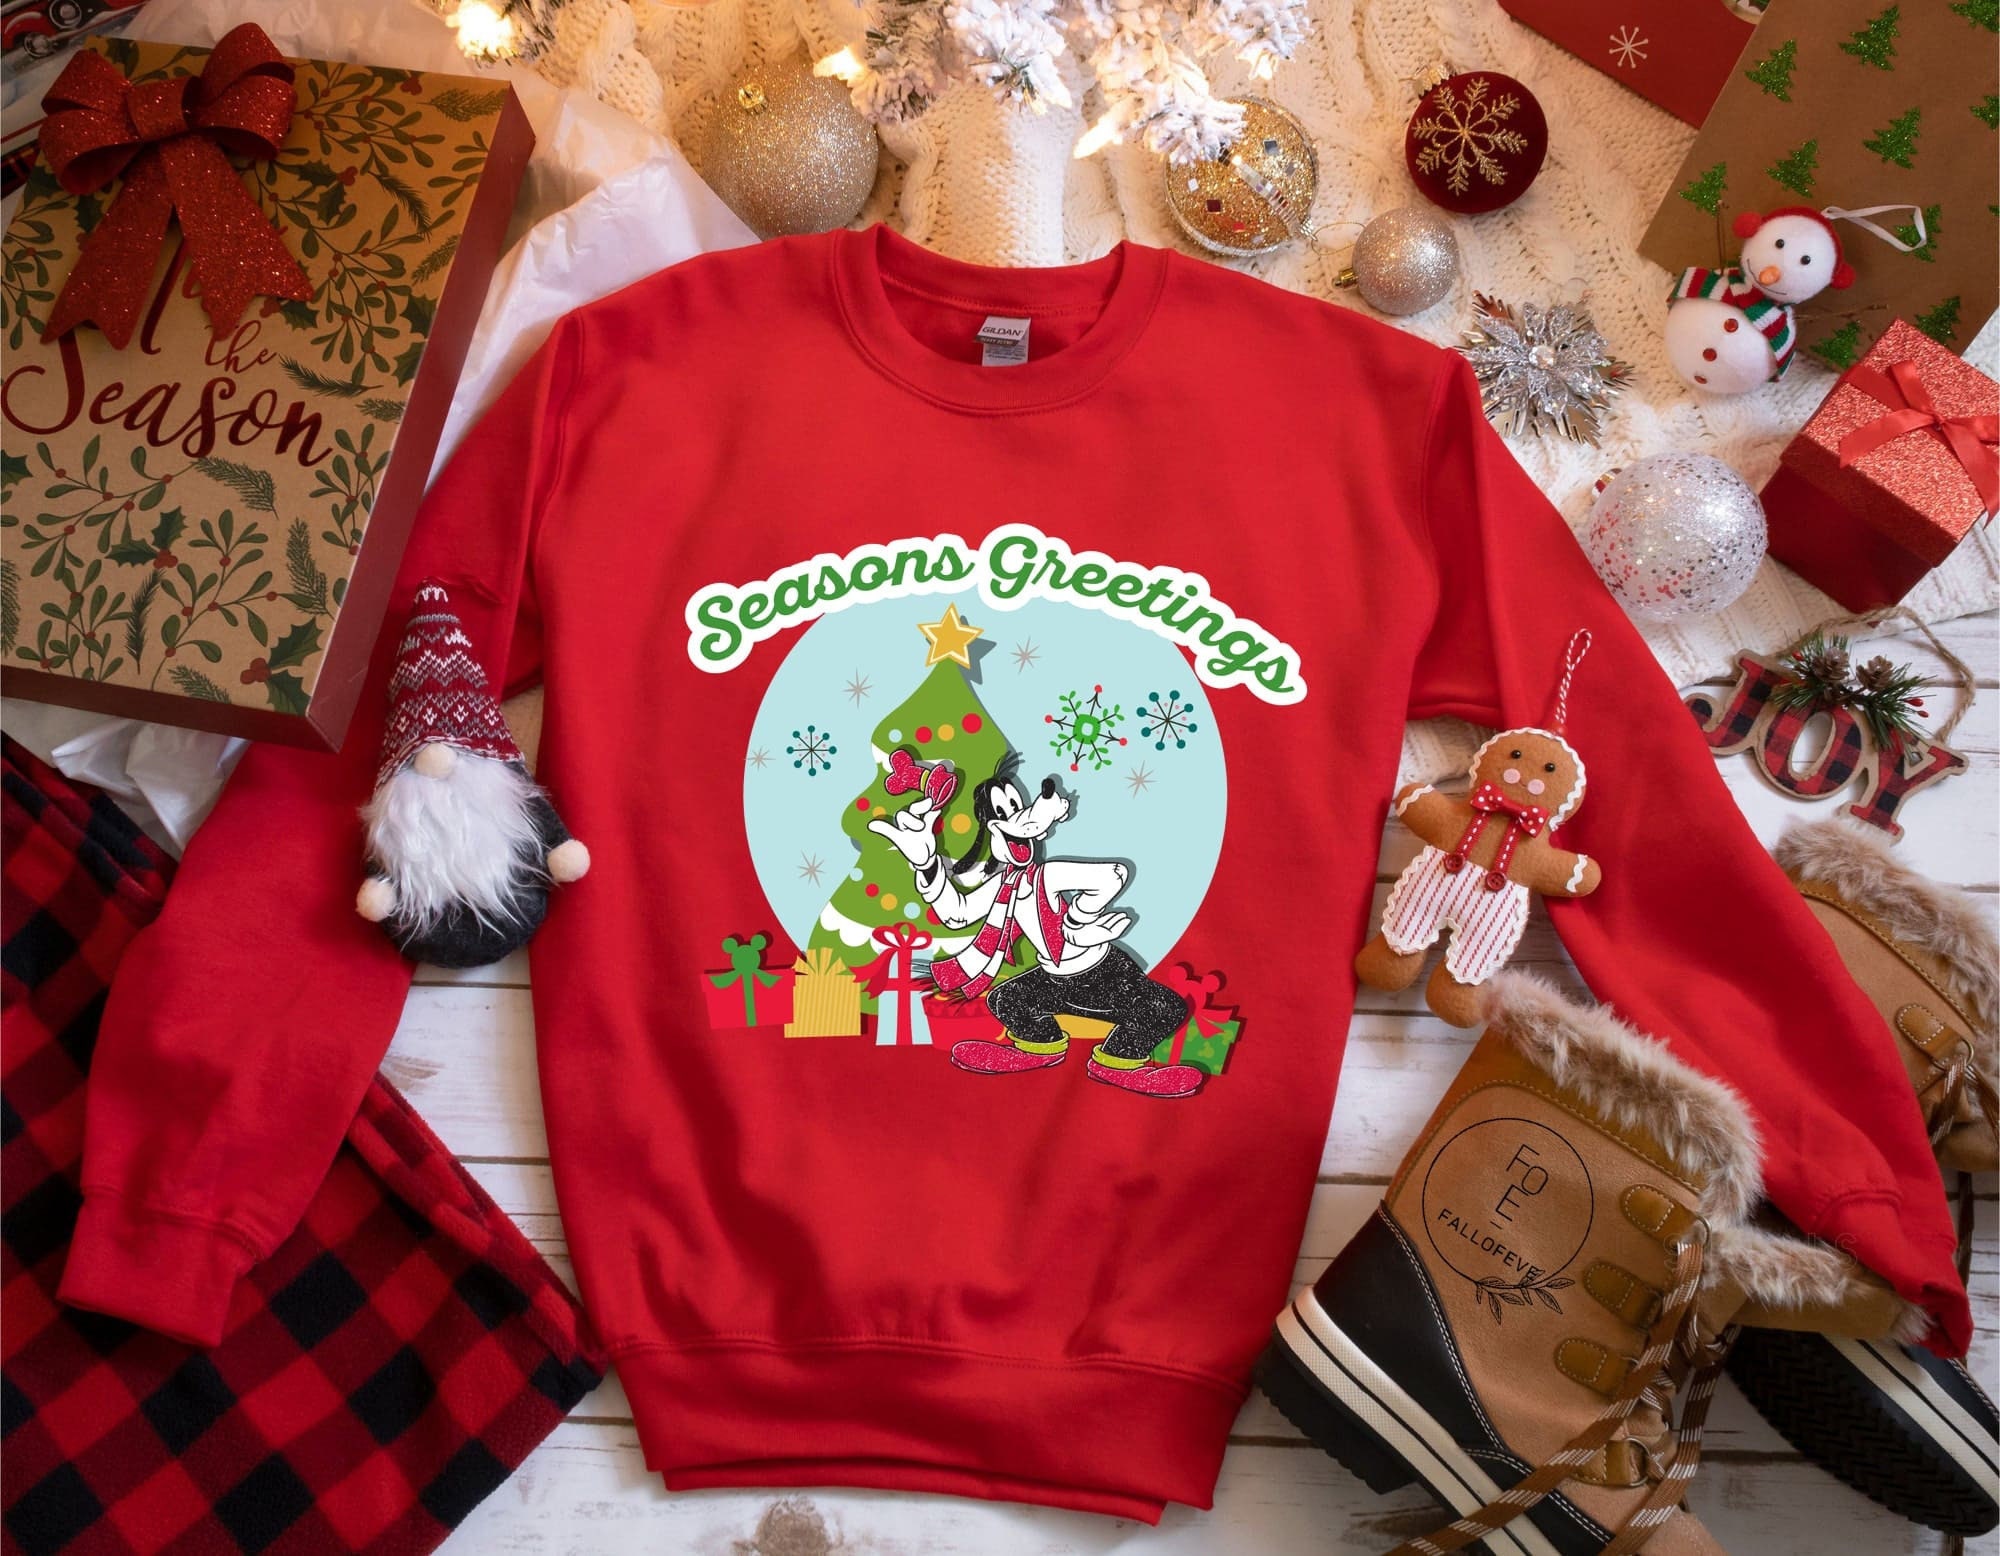 Discover Goofy Christmas Sweatshirt, Goofy Disney Christmas Sweatshirt